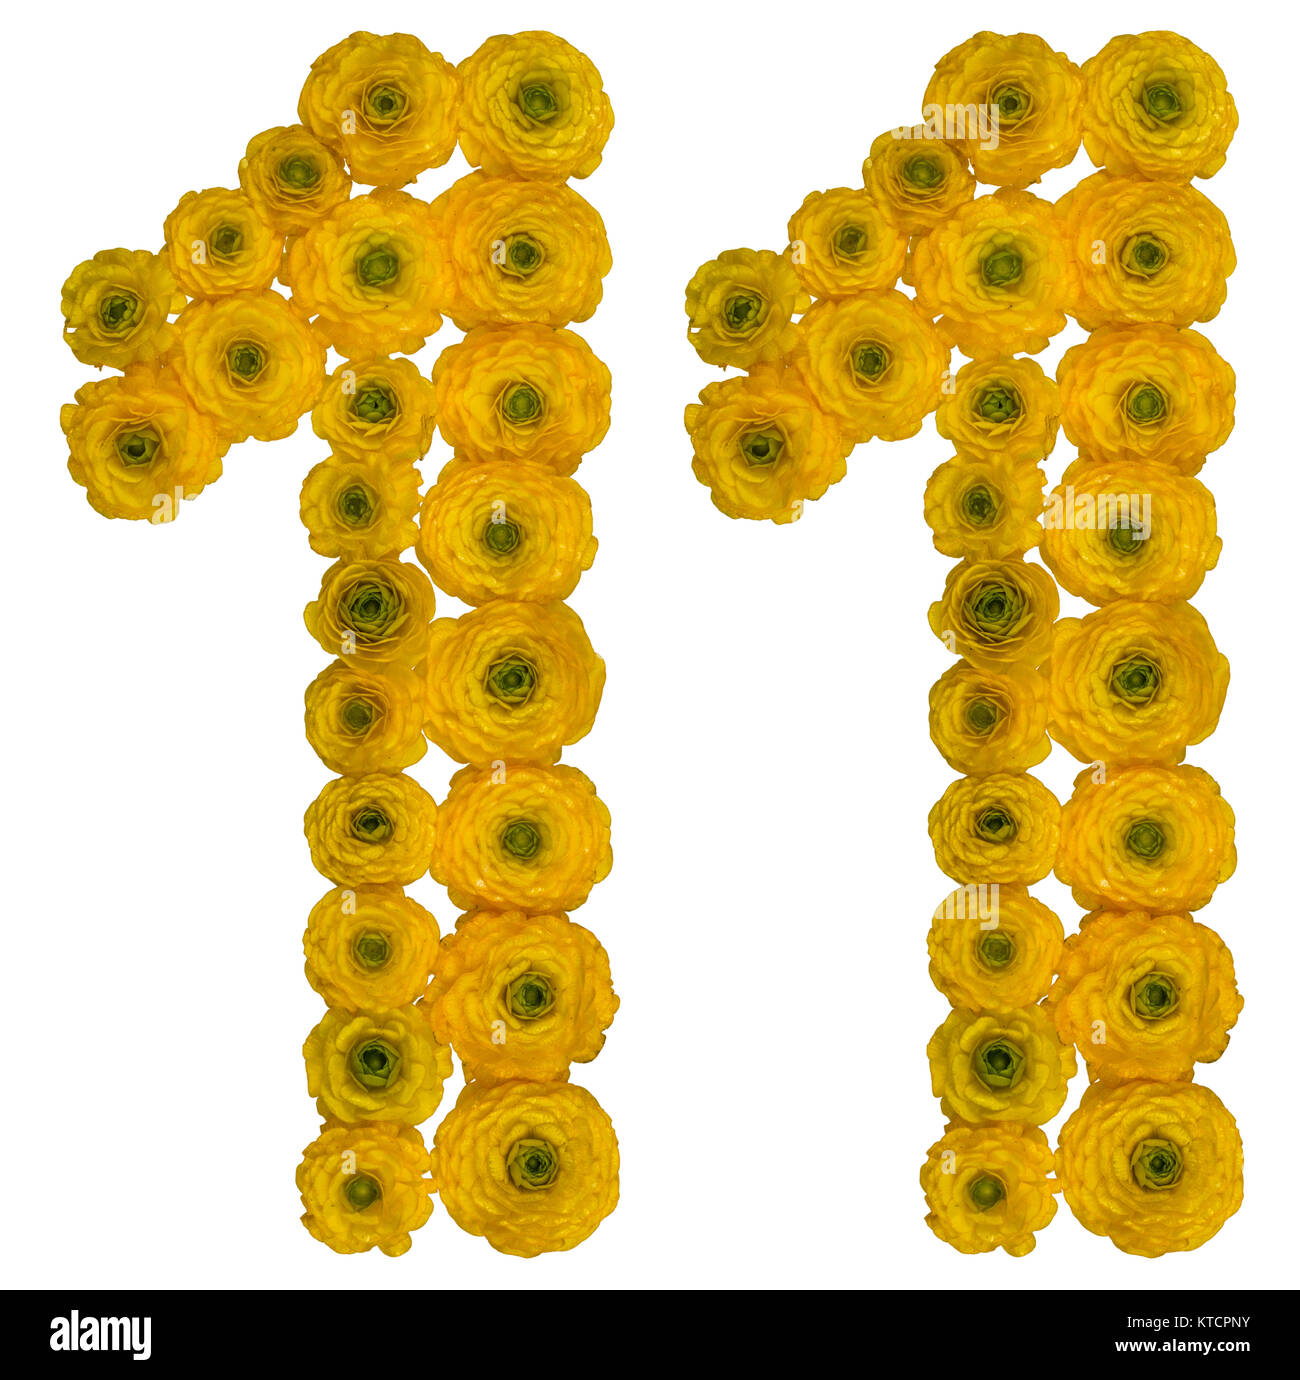 Numero arabo 11, undici, dal giallo dei fiori di ranuncolo, isolato su sfondo bianco Foto Stock